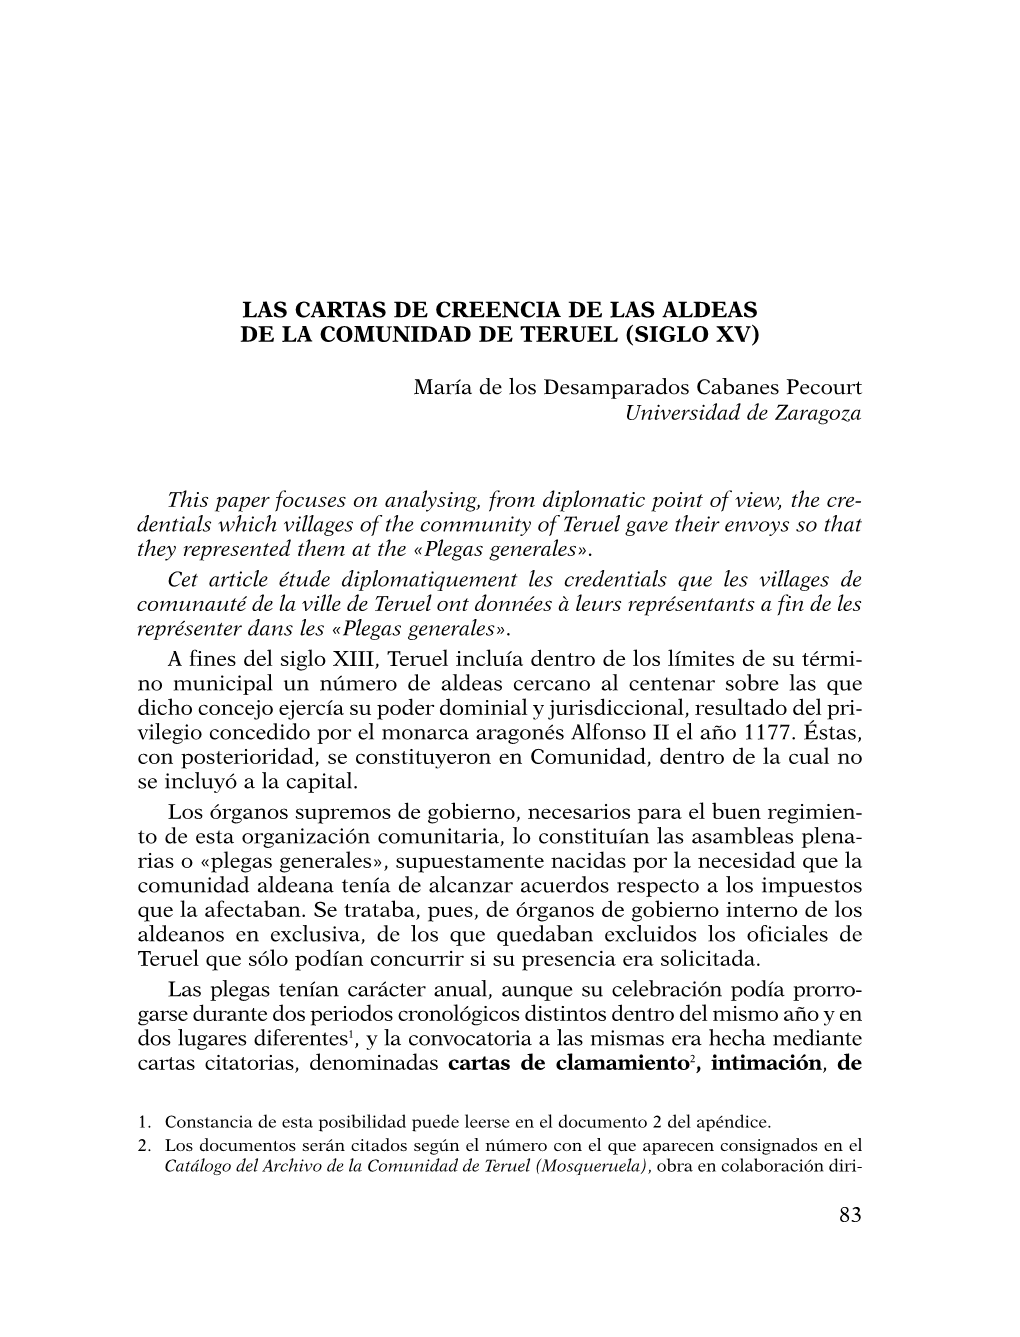 LAS CARTAS DE CREENCIA DE LAS ALDEAS DE LA COMUNIDAD DE TERUEL (SIGLO XV) María De Los Desamparados Cabanes Pecourt Universidad